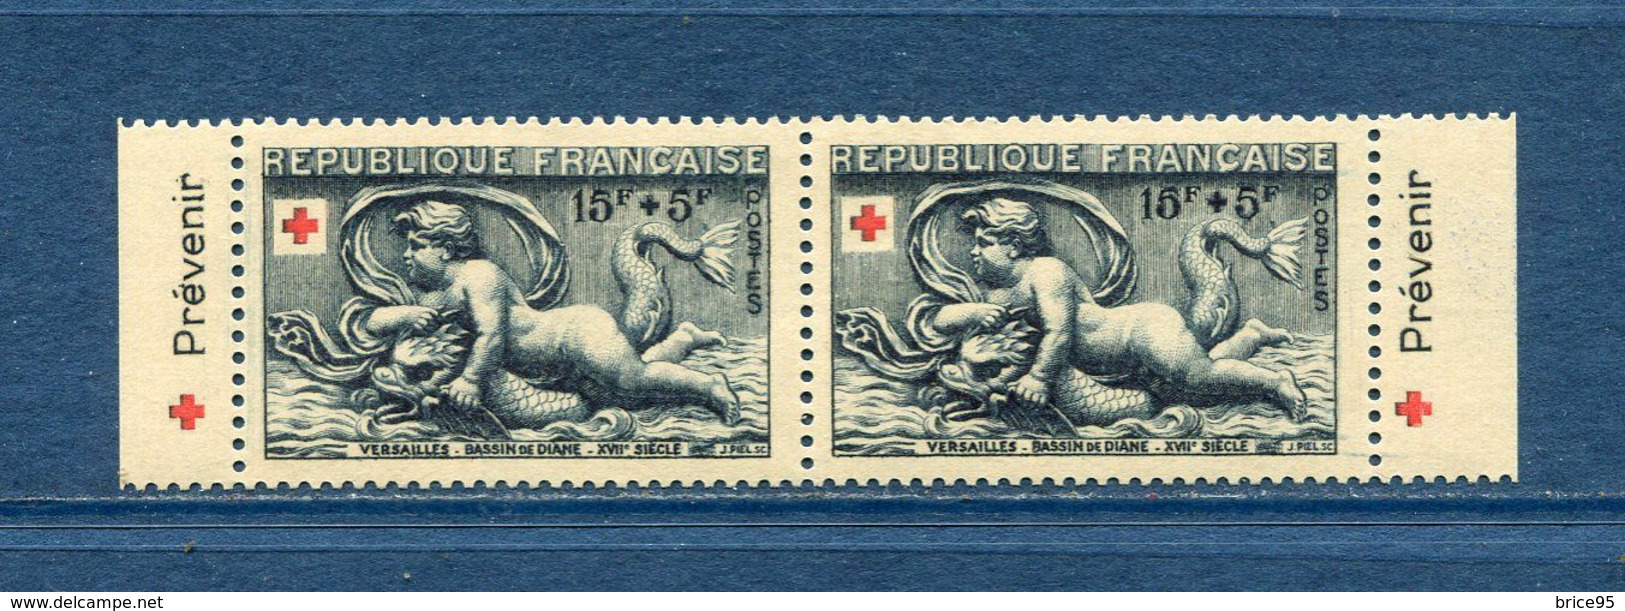 France - Croix Rouge - érinnophilie - Vignette Carnet Croix Rouge 1952 - Neuf Sans Charnière - 1952 - Cruz Roja